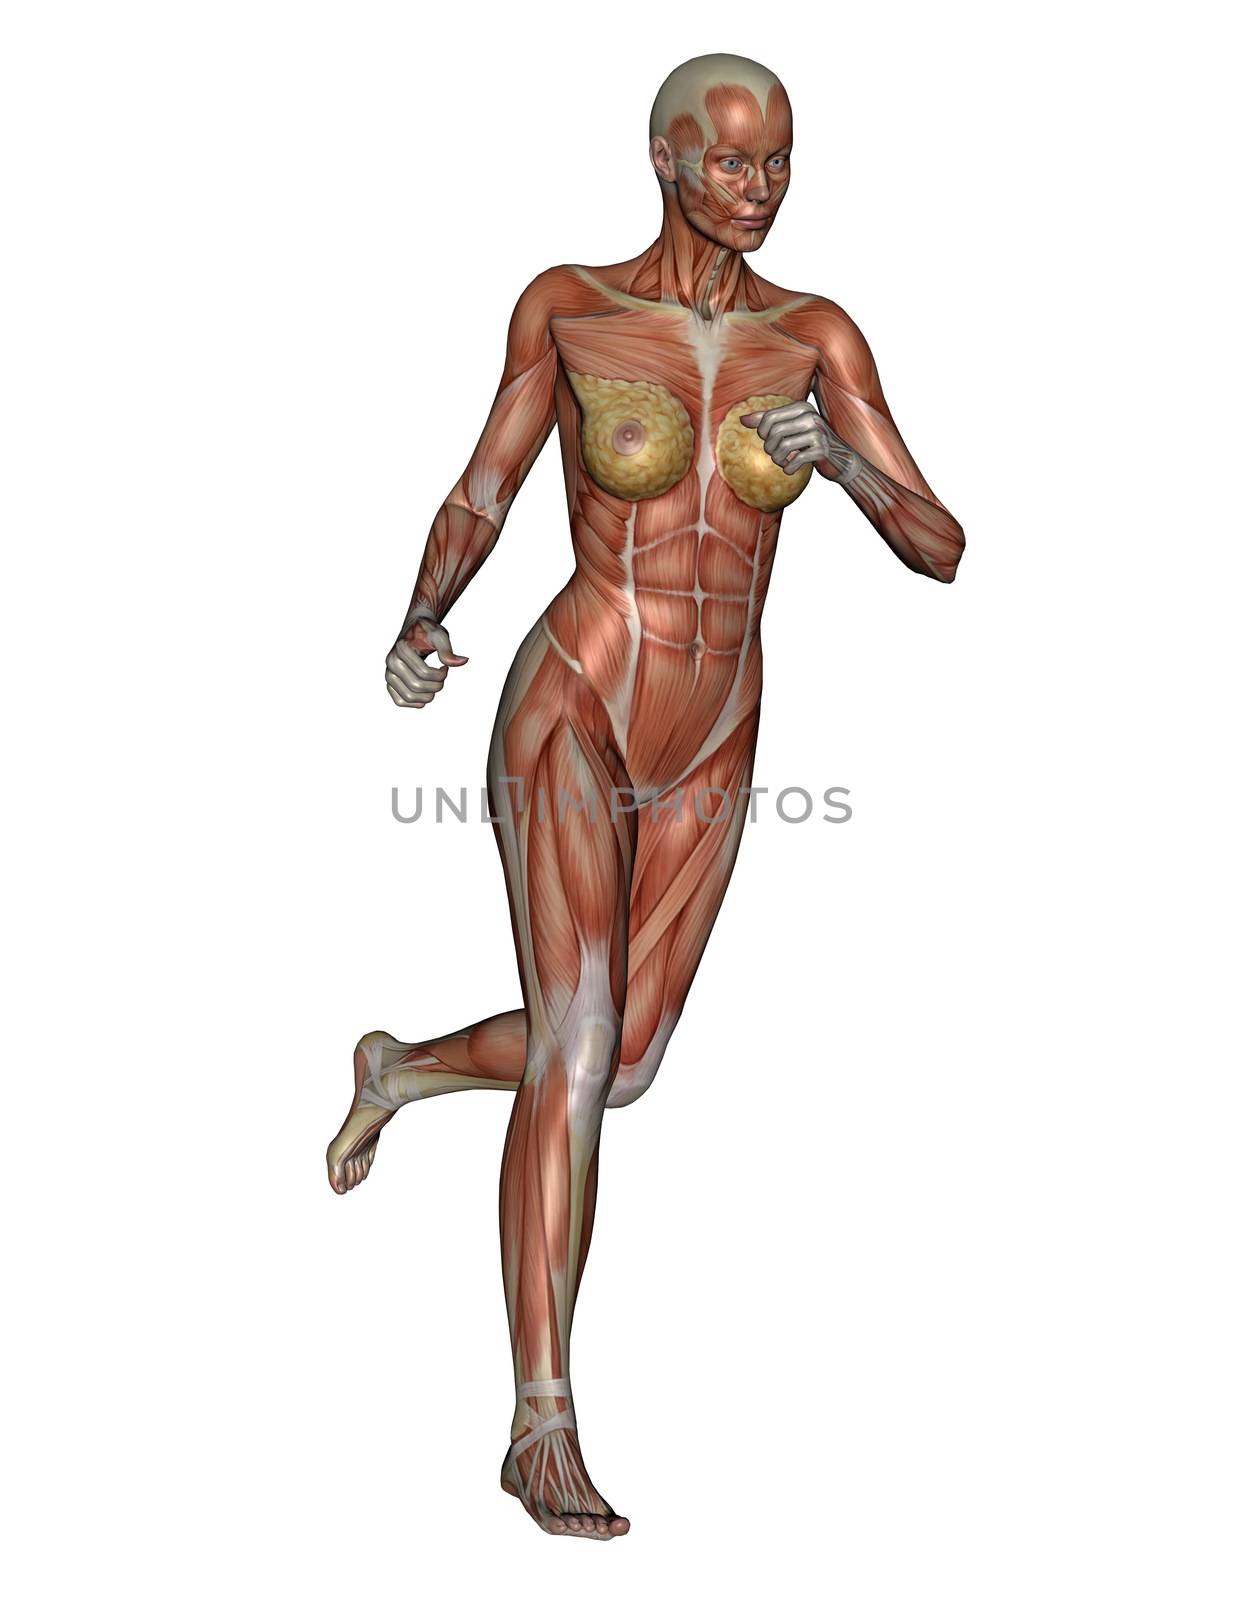 Woman running - 3D render by Elenaphotos21